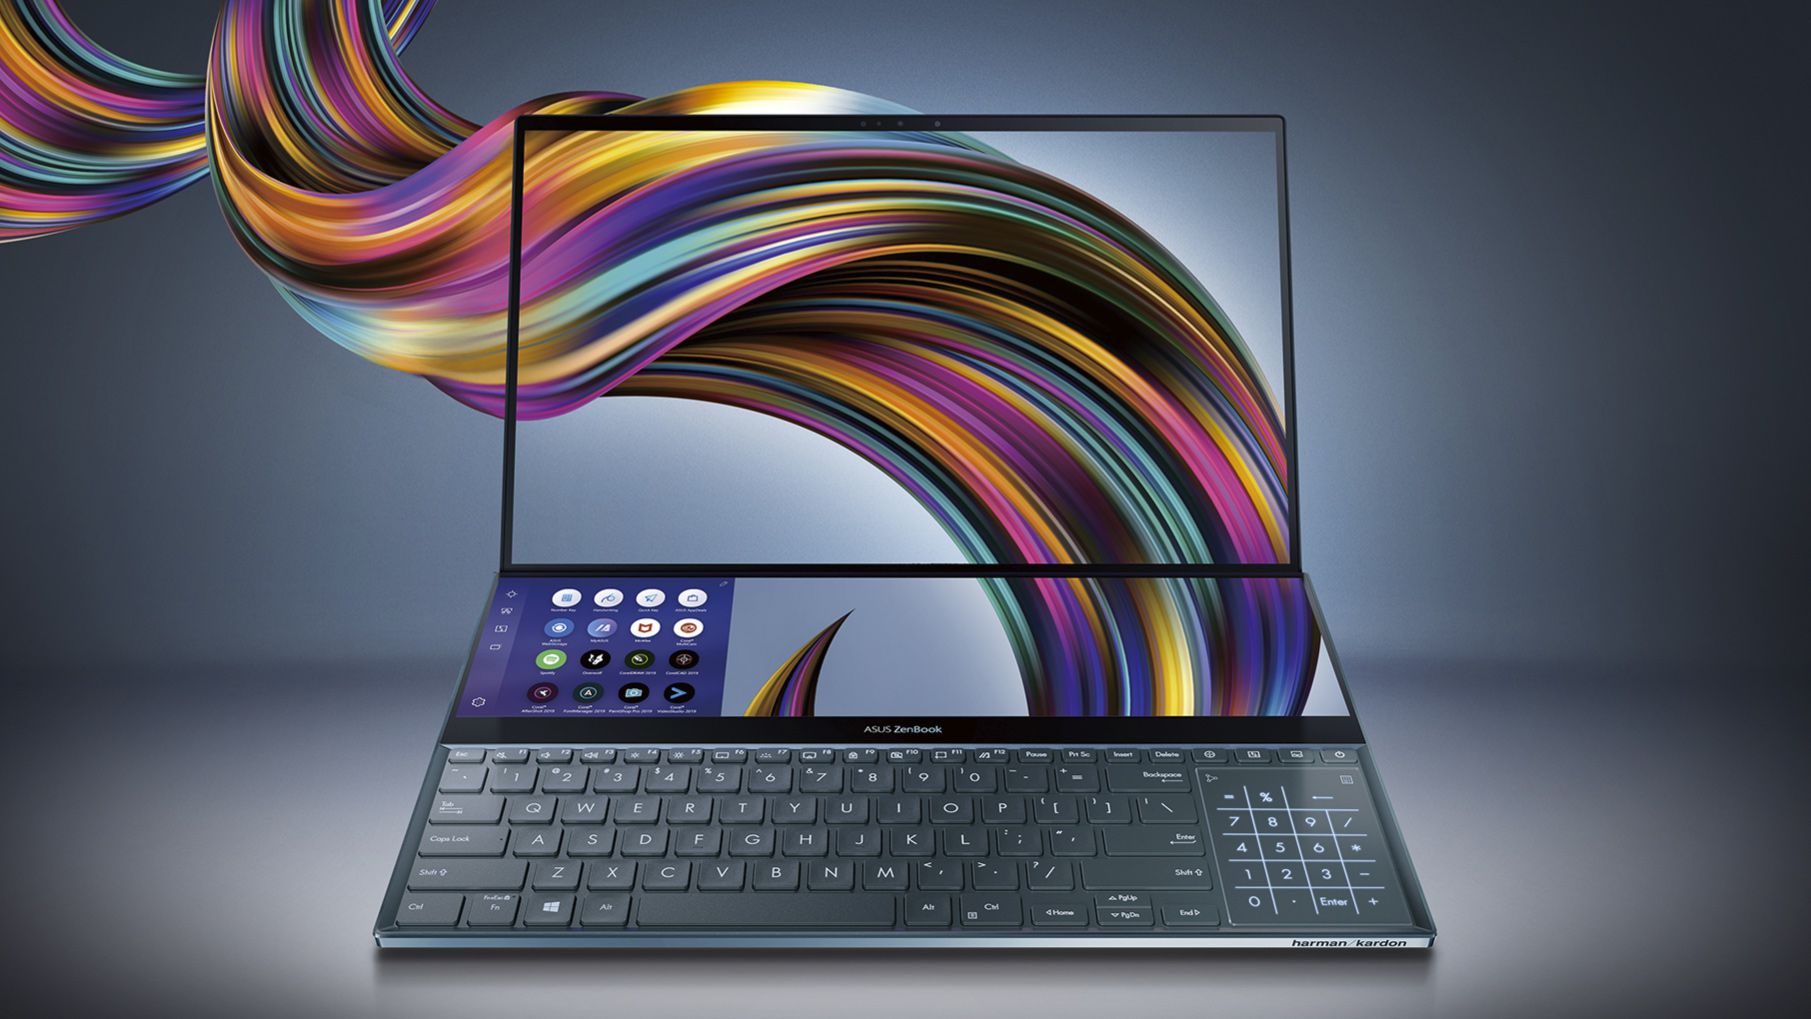 Asus ZenBook Pro Duo 4k displays